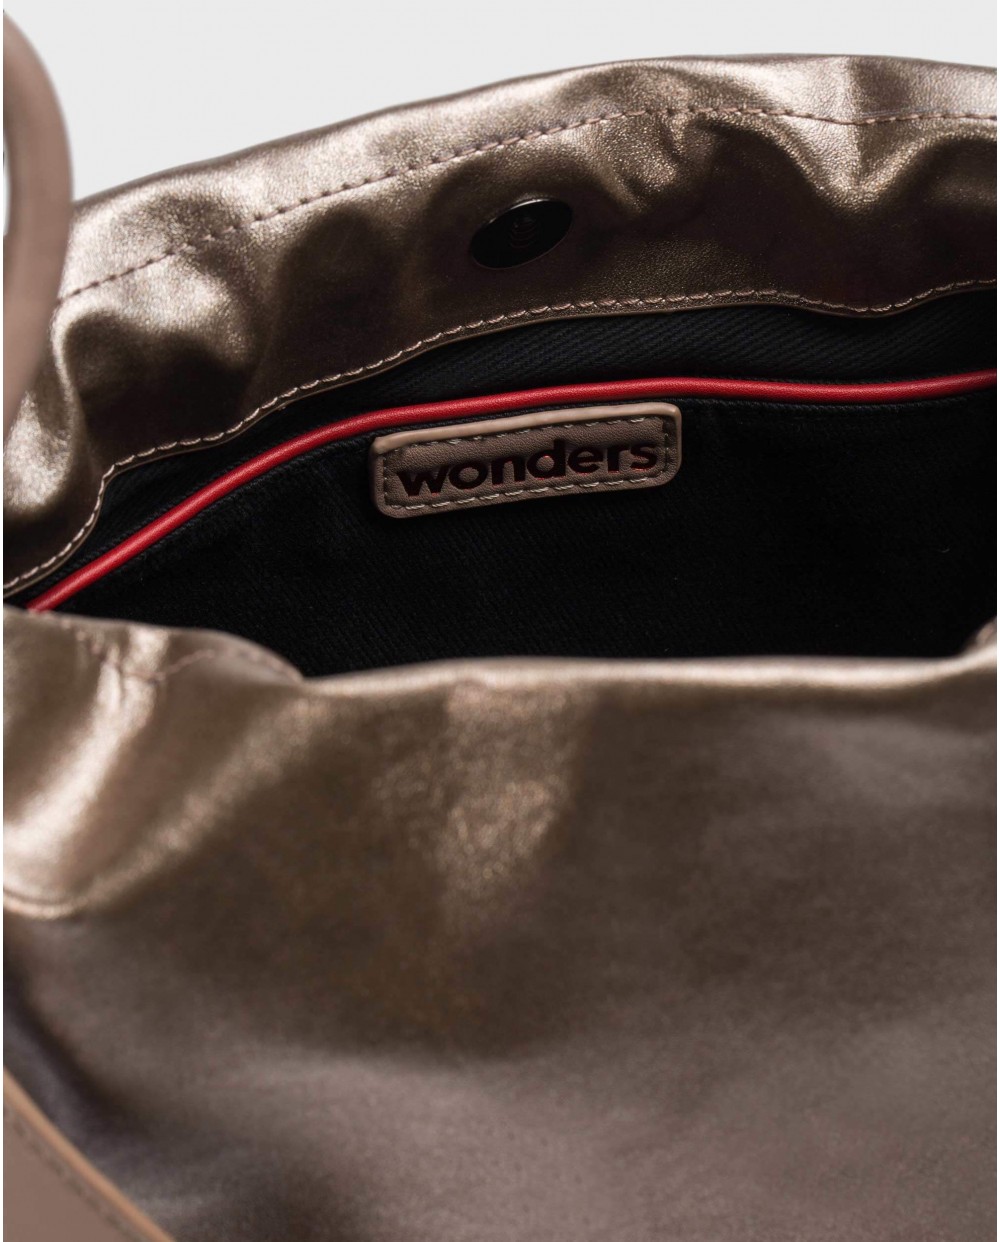 Wonders-Bags-Broze Pearl Bag